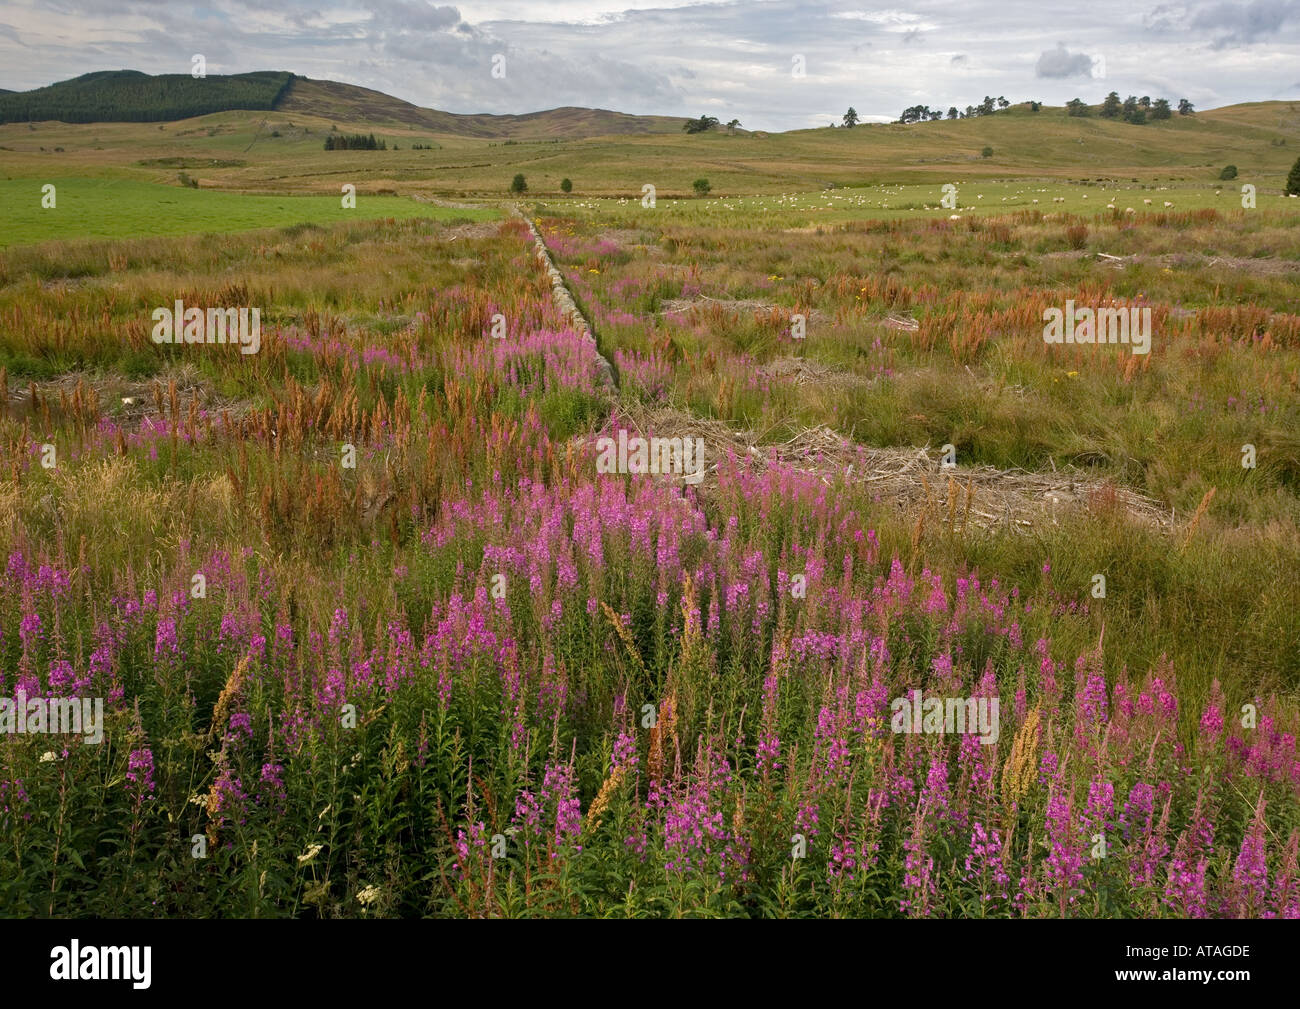 Rosebay willowherb en masse in fields near Glenshee Stock Photo